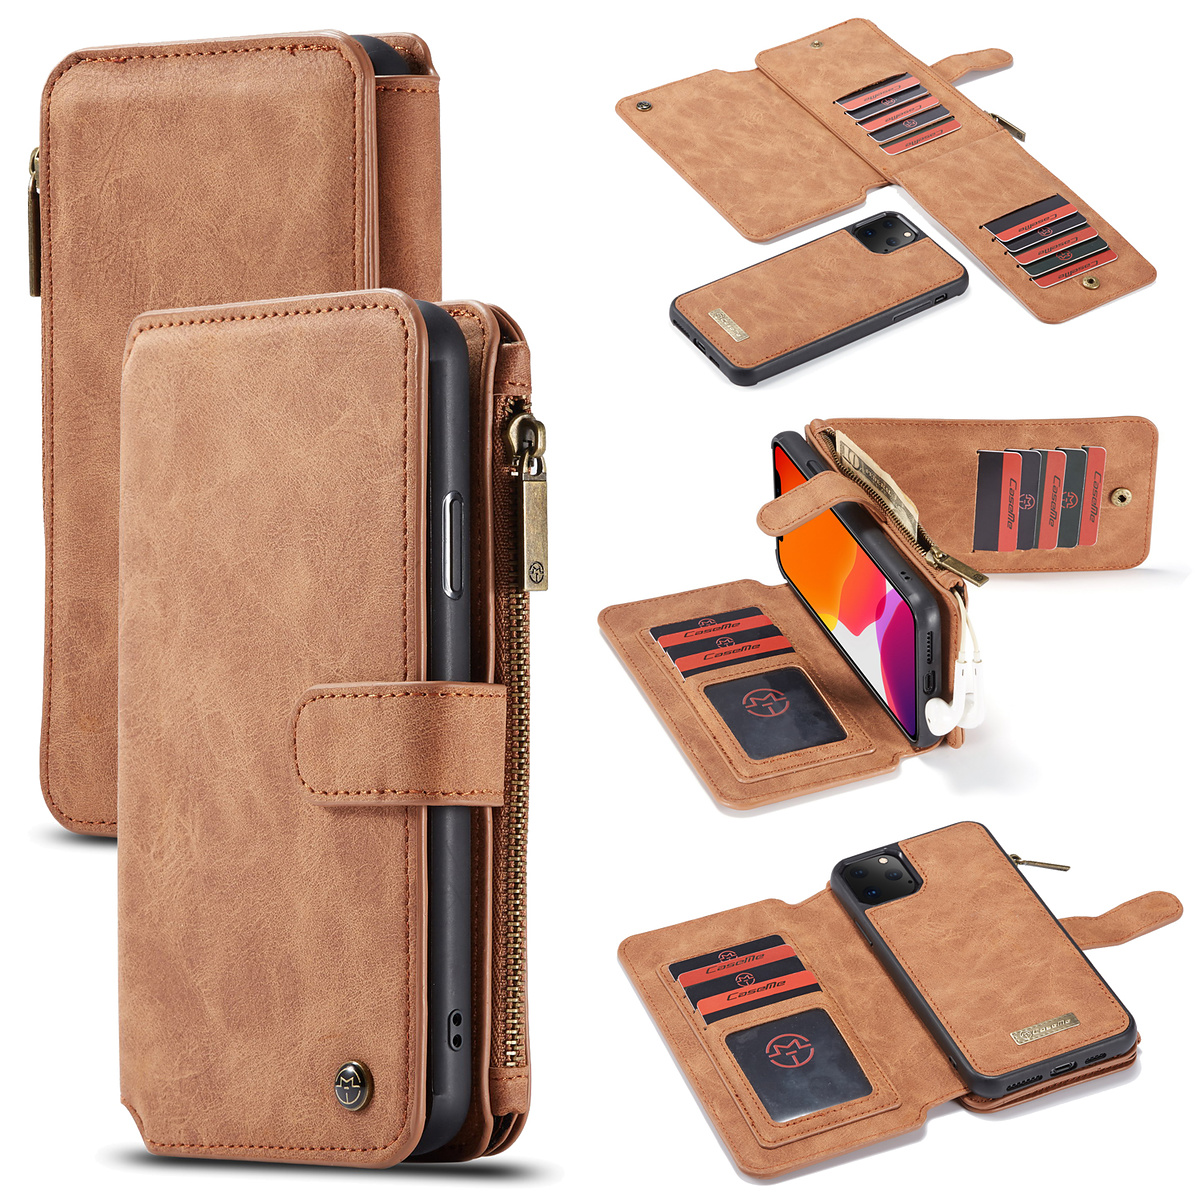 CaseMe plånboksfodral, magnetskal, iPhone 11 Pro Max, brun